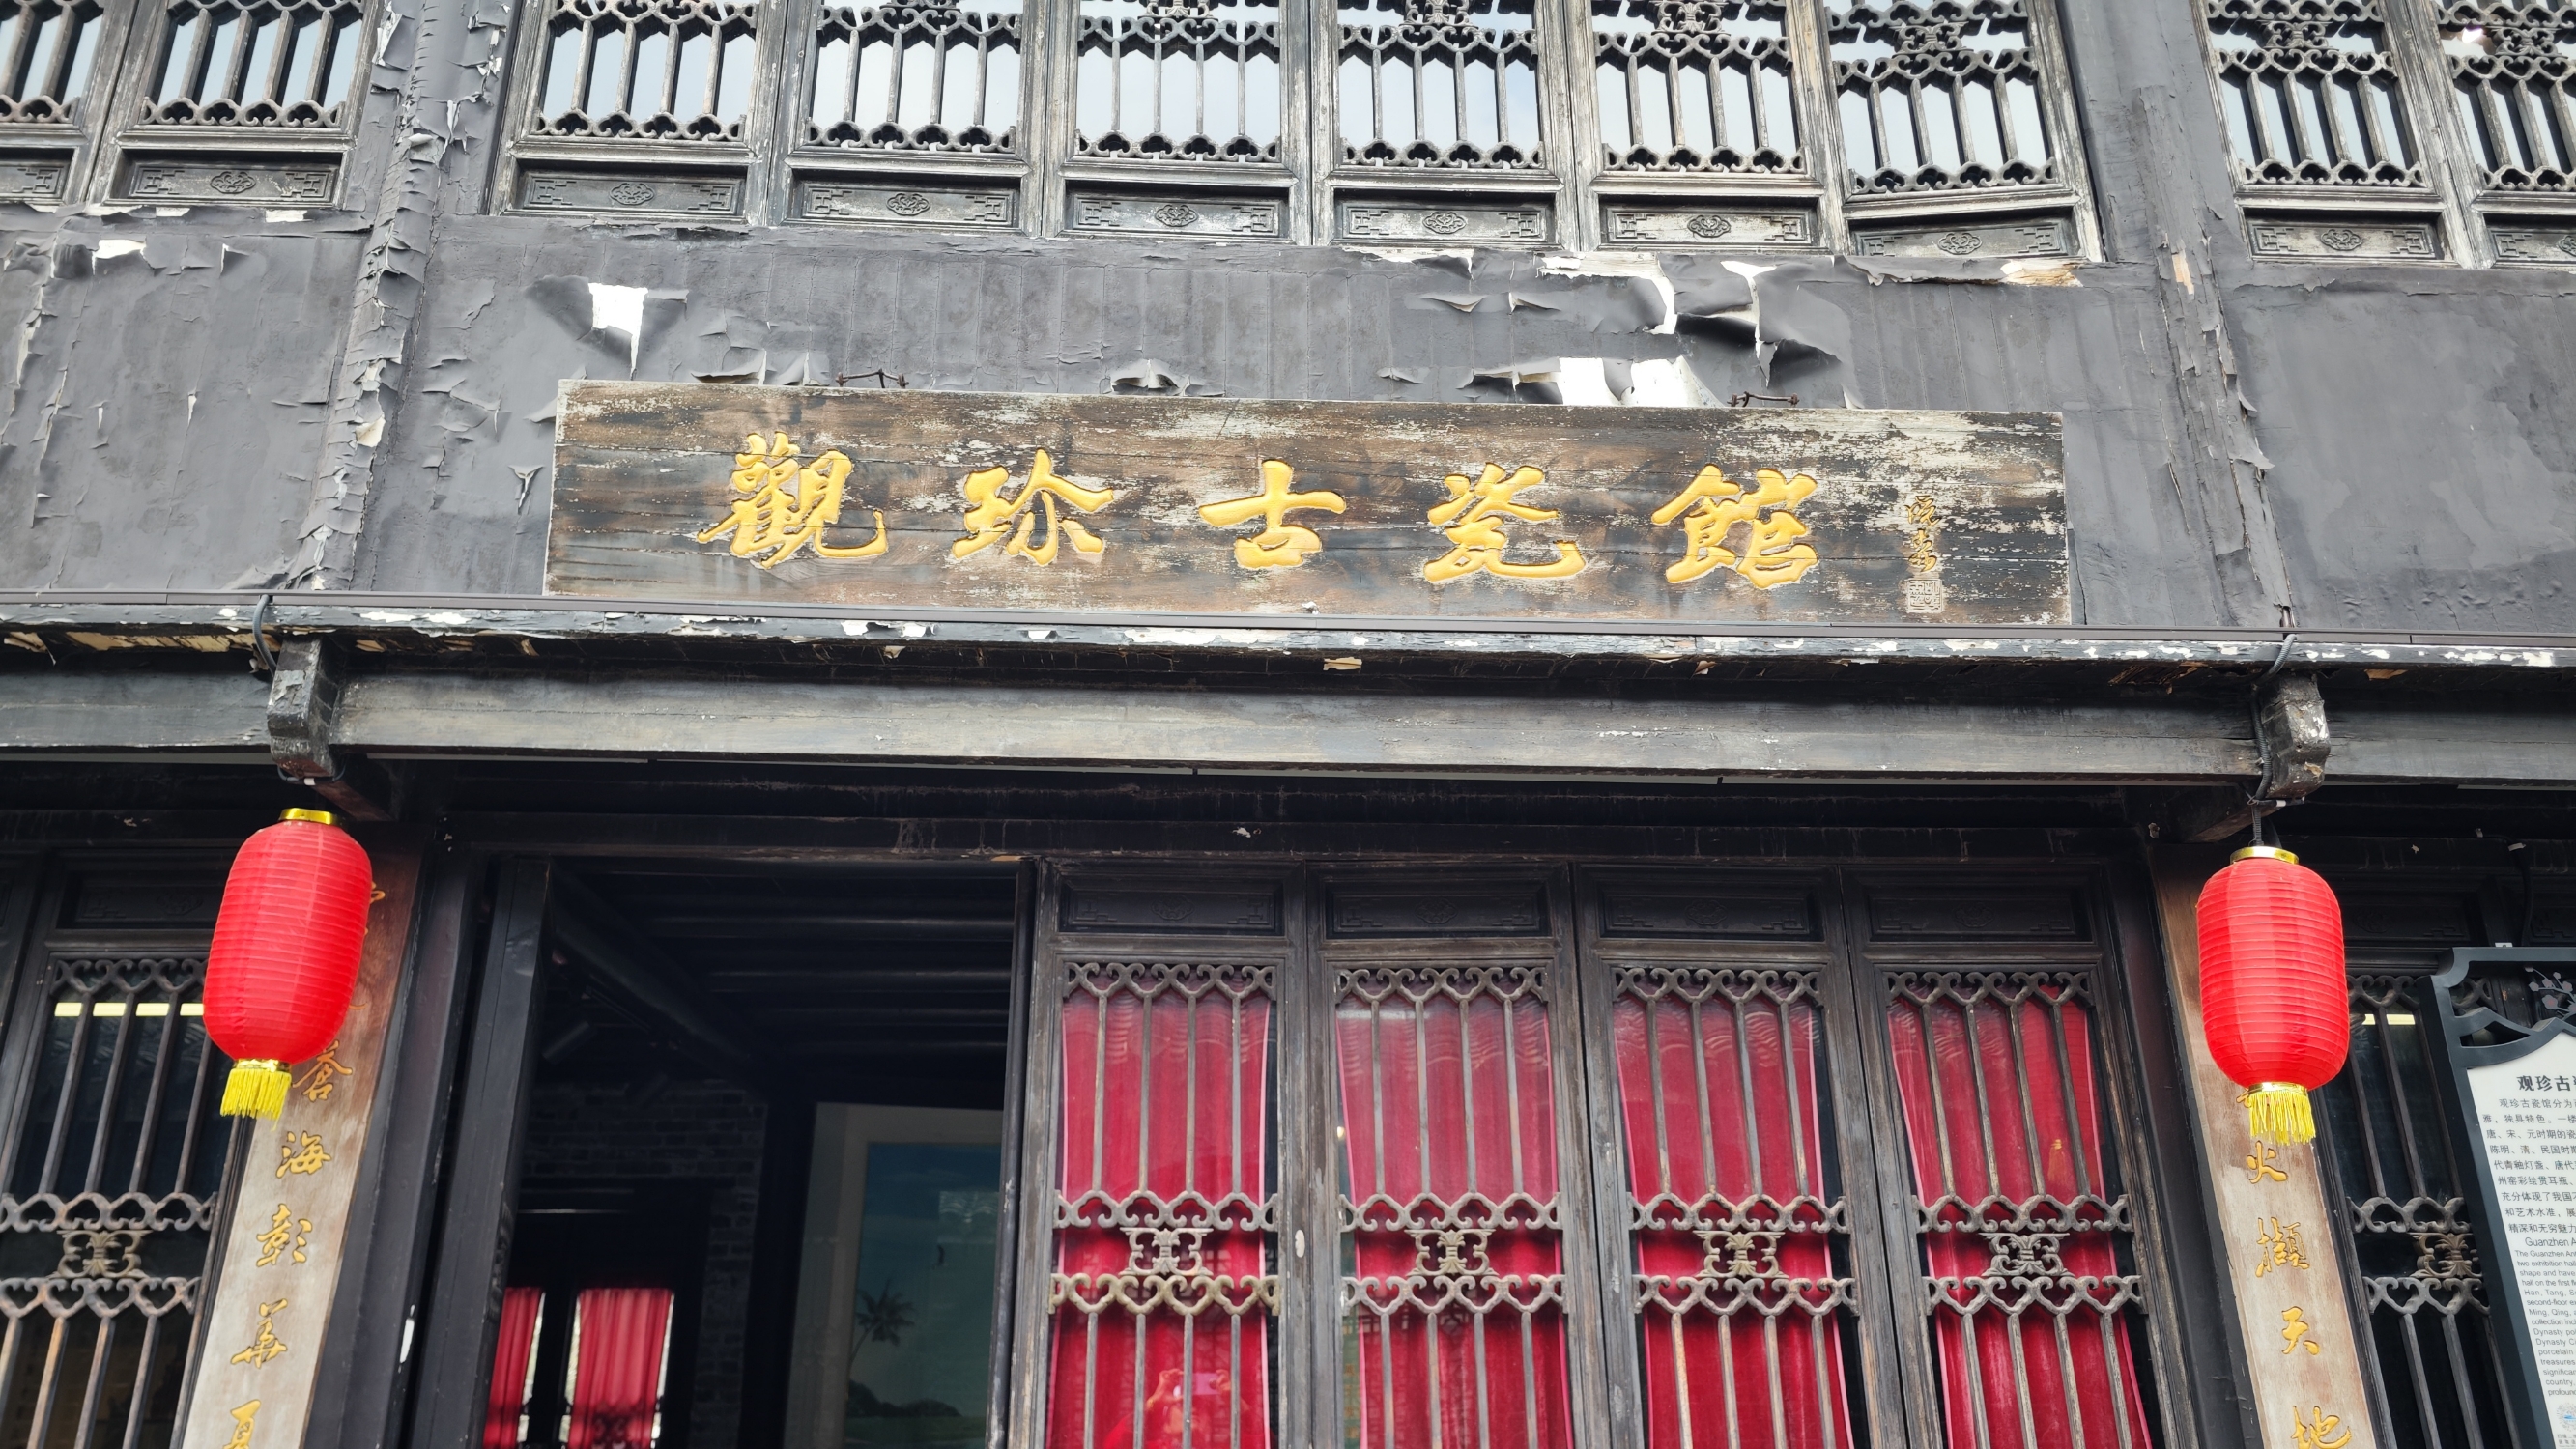 观珎古瓷馆，隐匿于安丰古镇的幽深之处，这是一处由私人慷慨捐献的藏馆，汇聚了无数珍稀古瓷的精华。走进馆